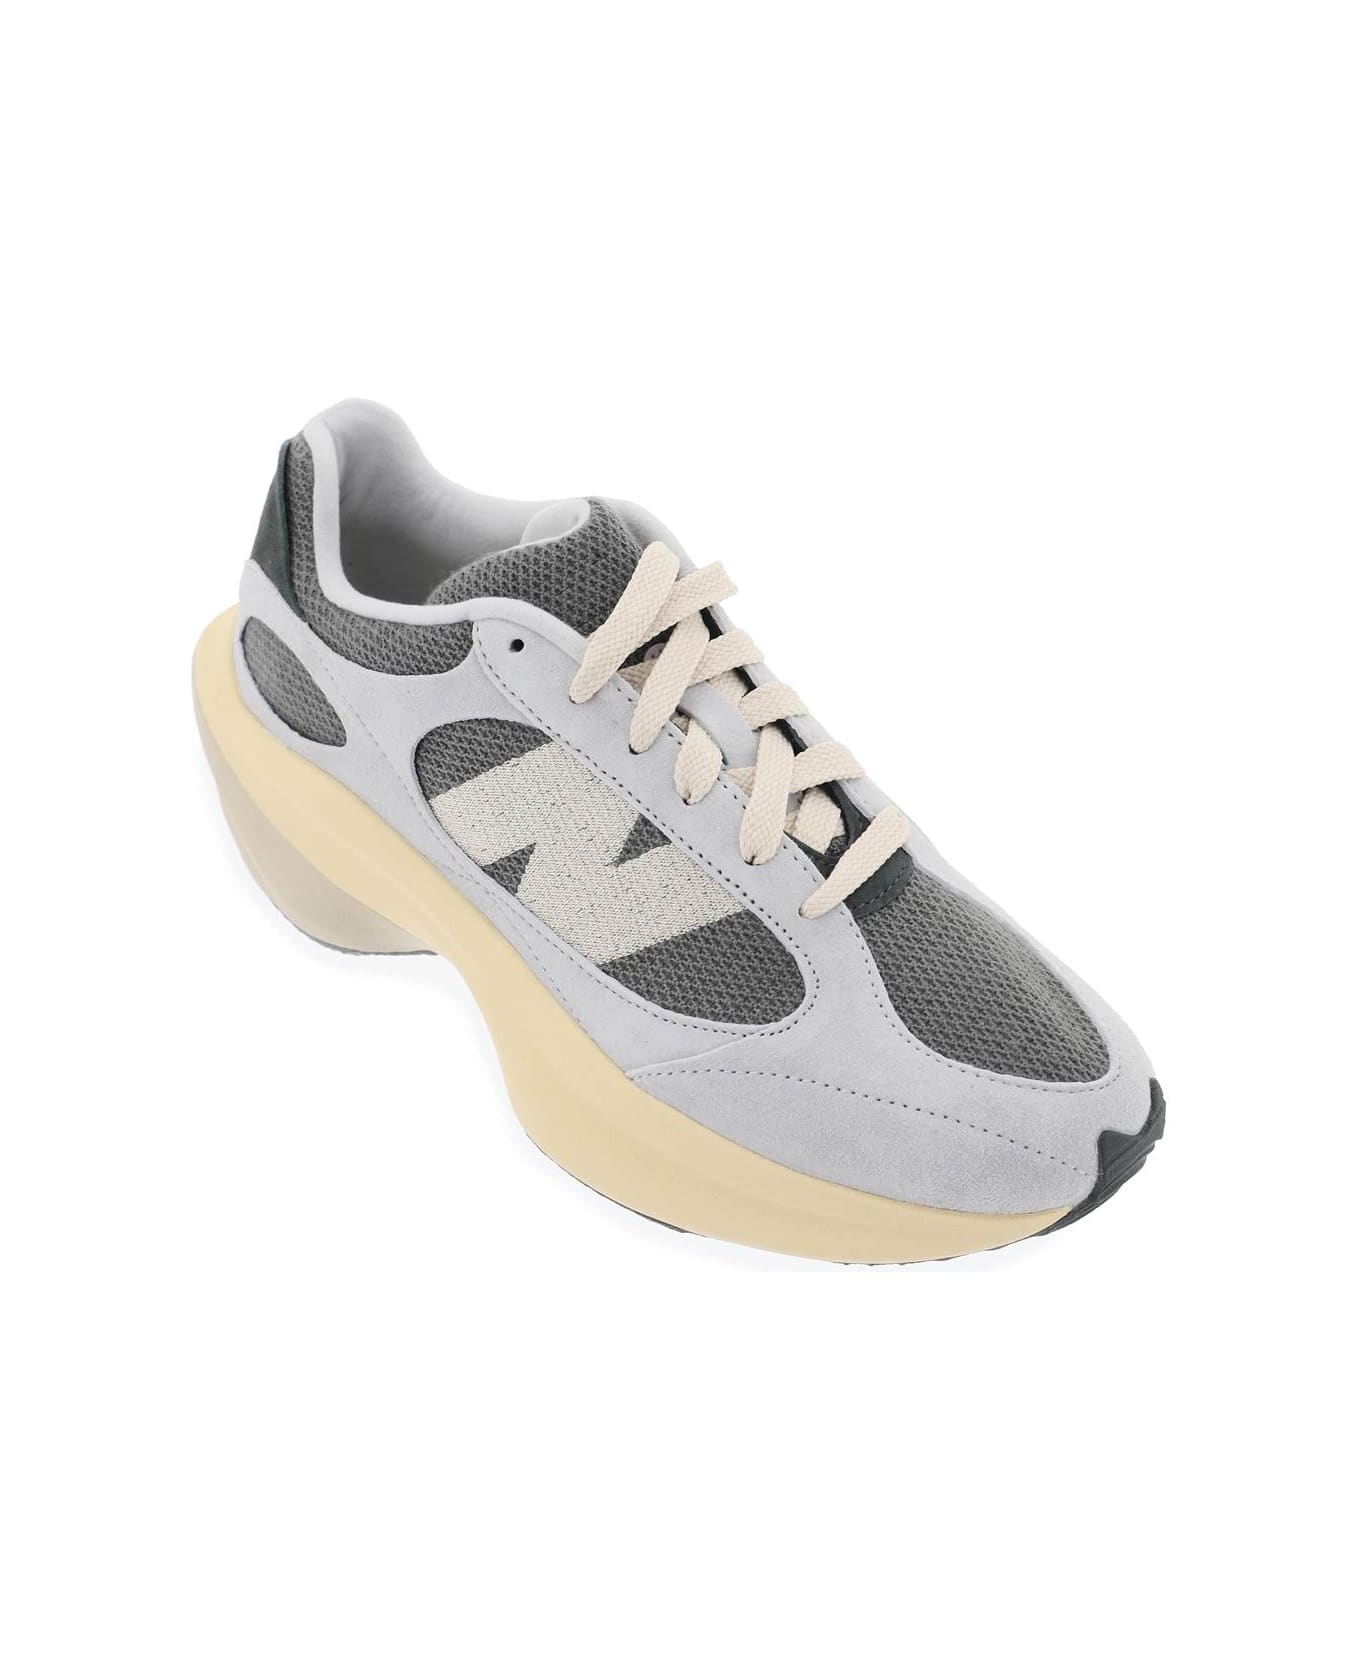 New Balance Wrpd Runner Sneakers - GREY MATTER (Grey) スニーカー